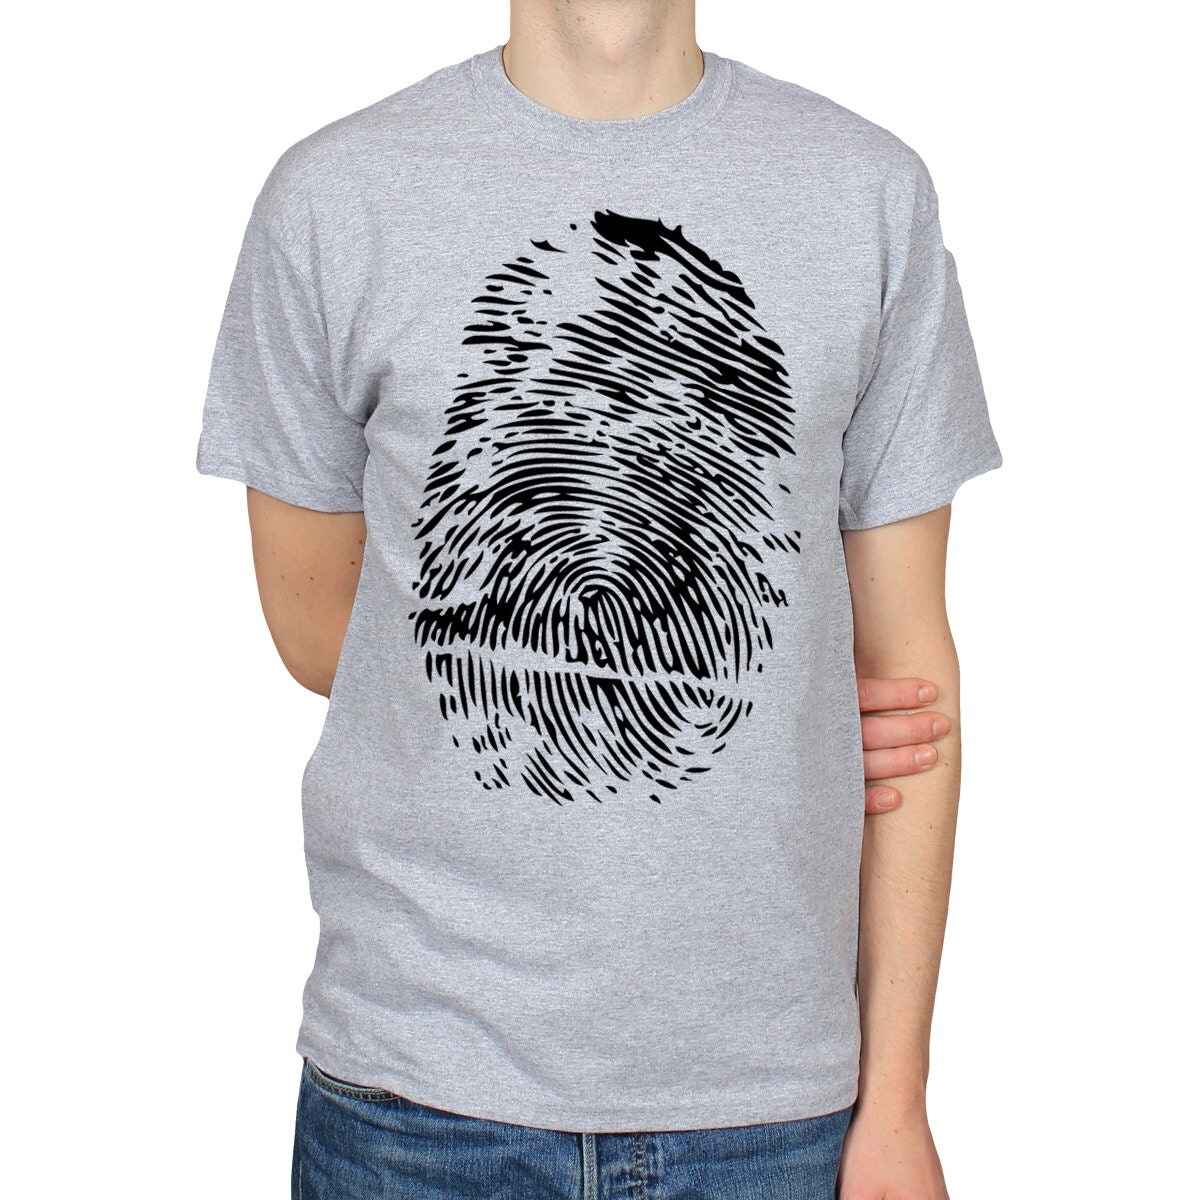 Thumbprint T-Shirt Fingerprint Graphic Tee Gift for Student